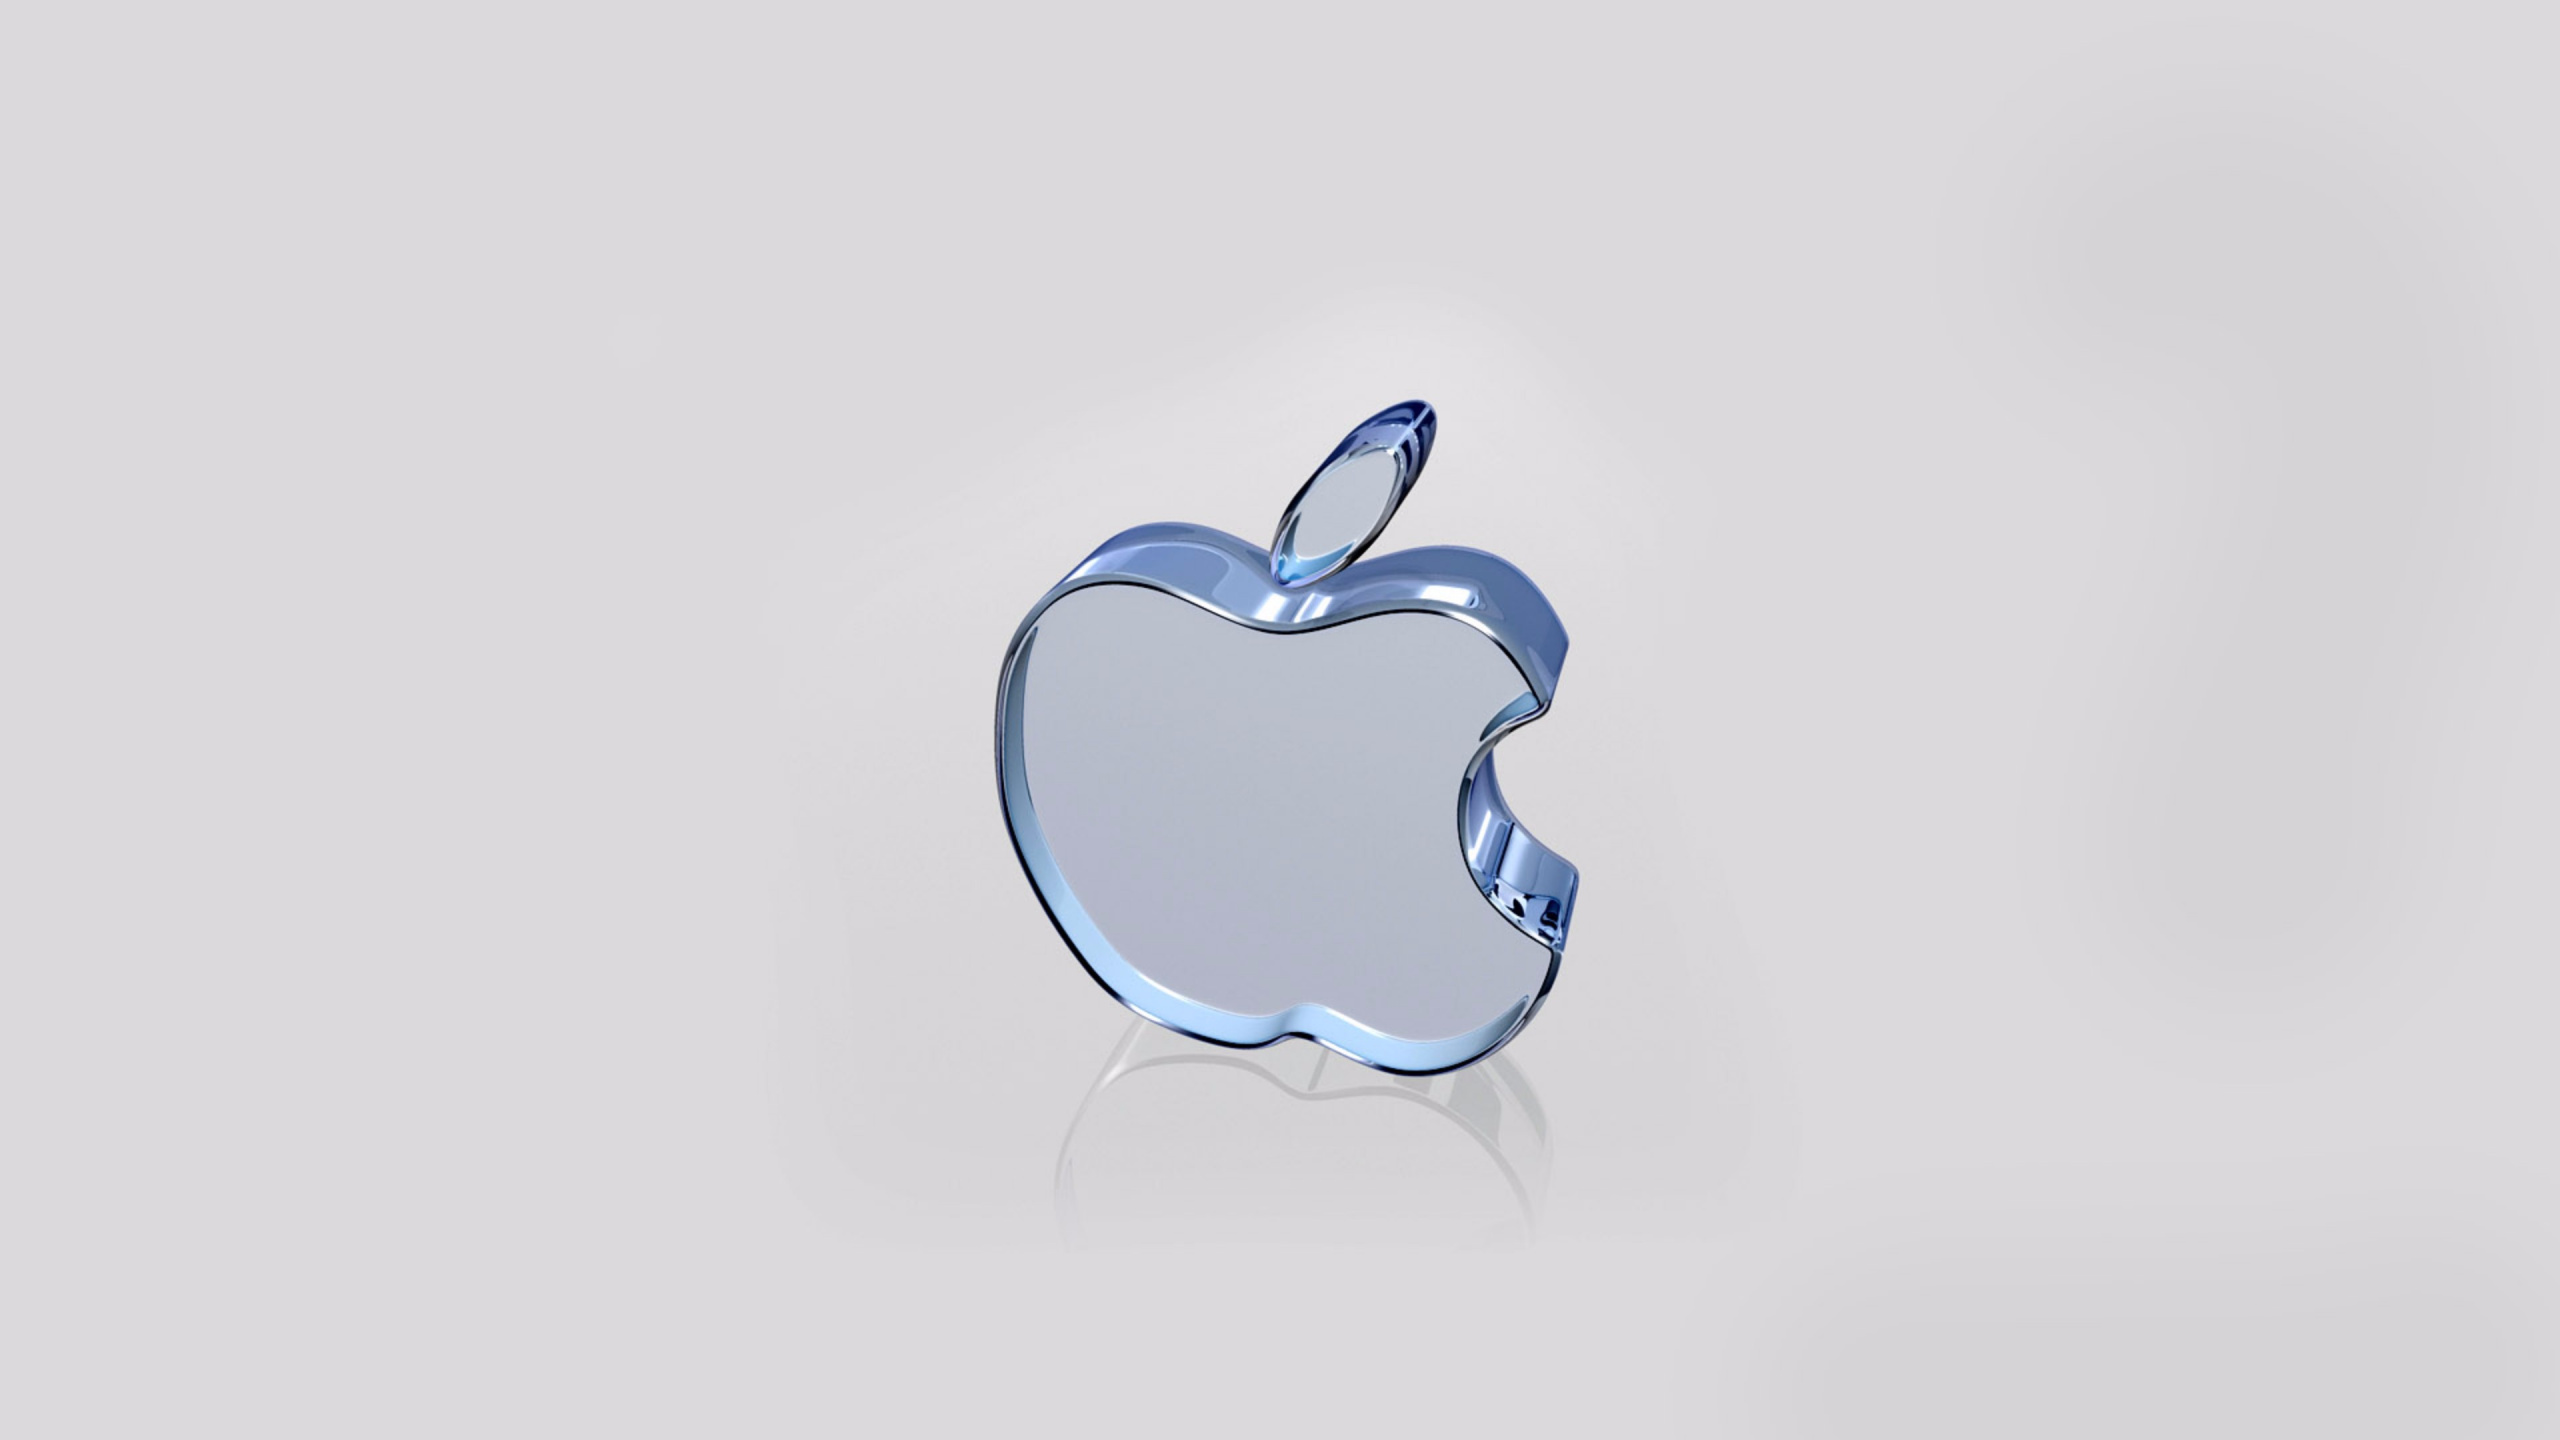 Apple, Firmenzeichen, Äpfeln, Blau, Herzen. Wallpaper in 2560x1440 Resolution